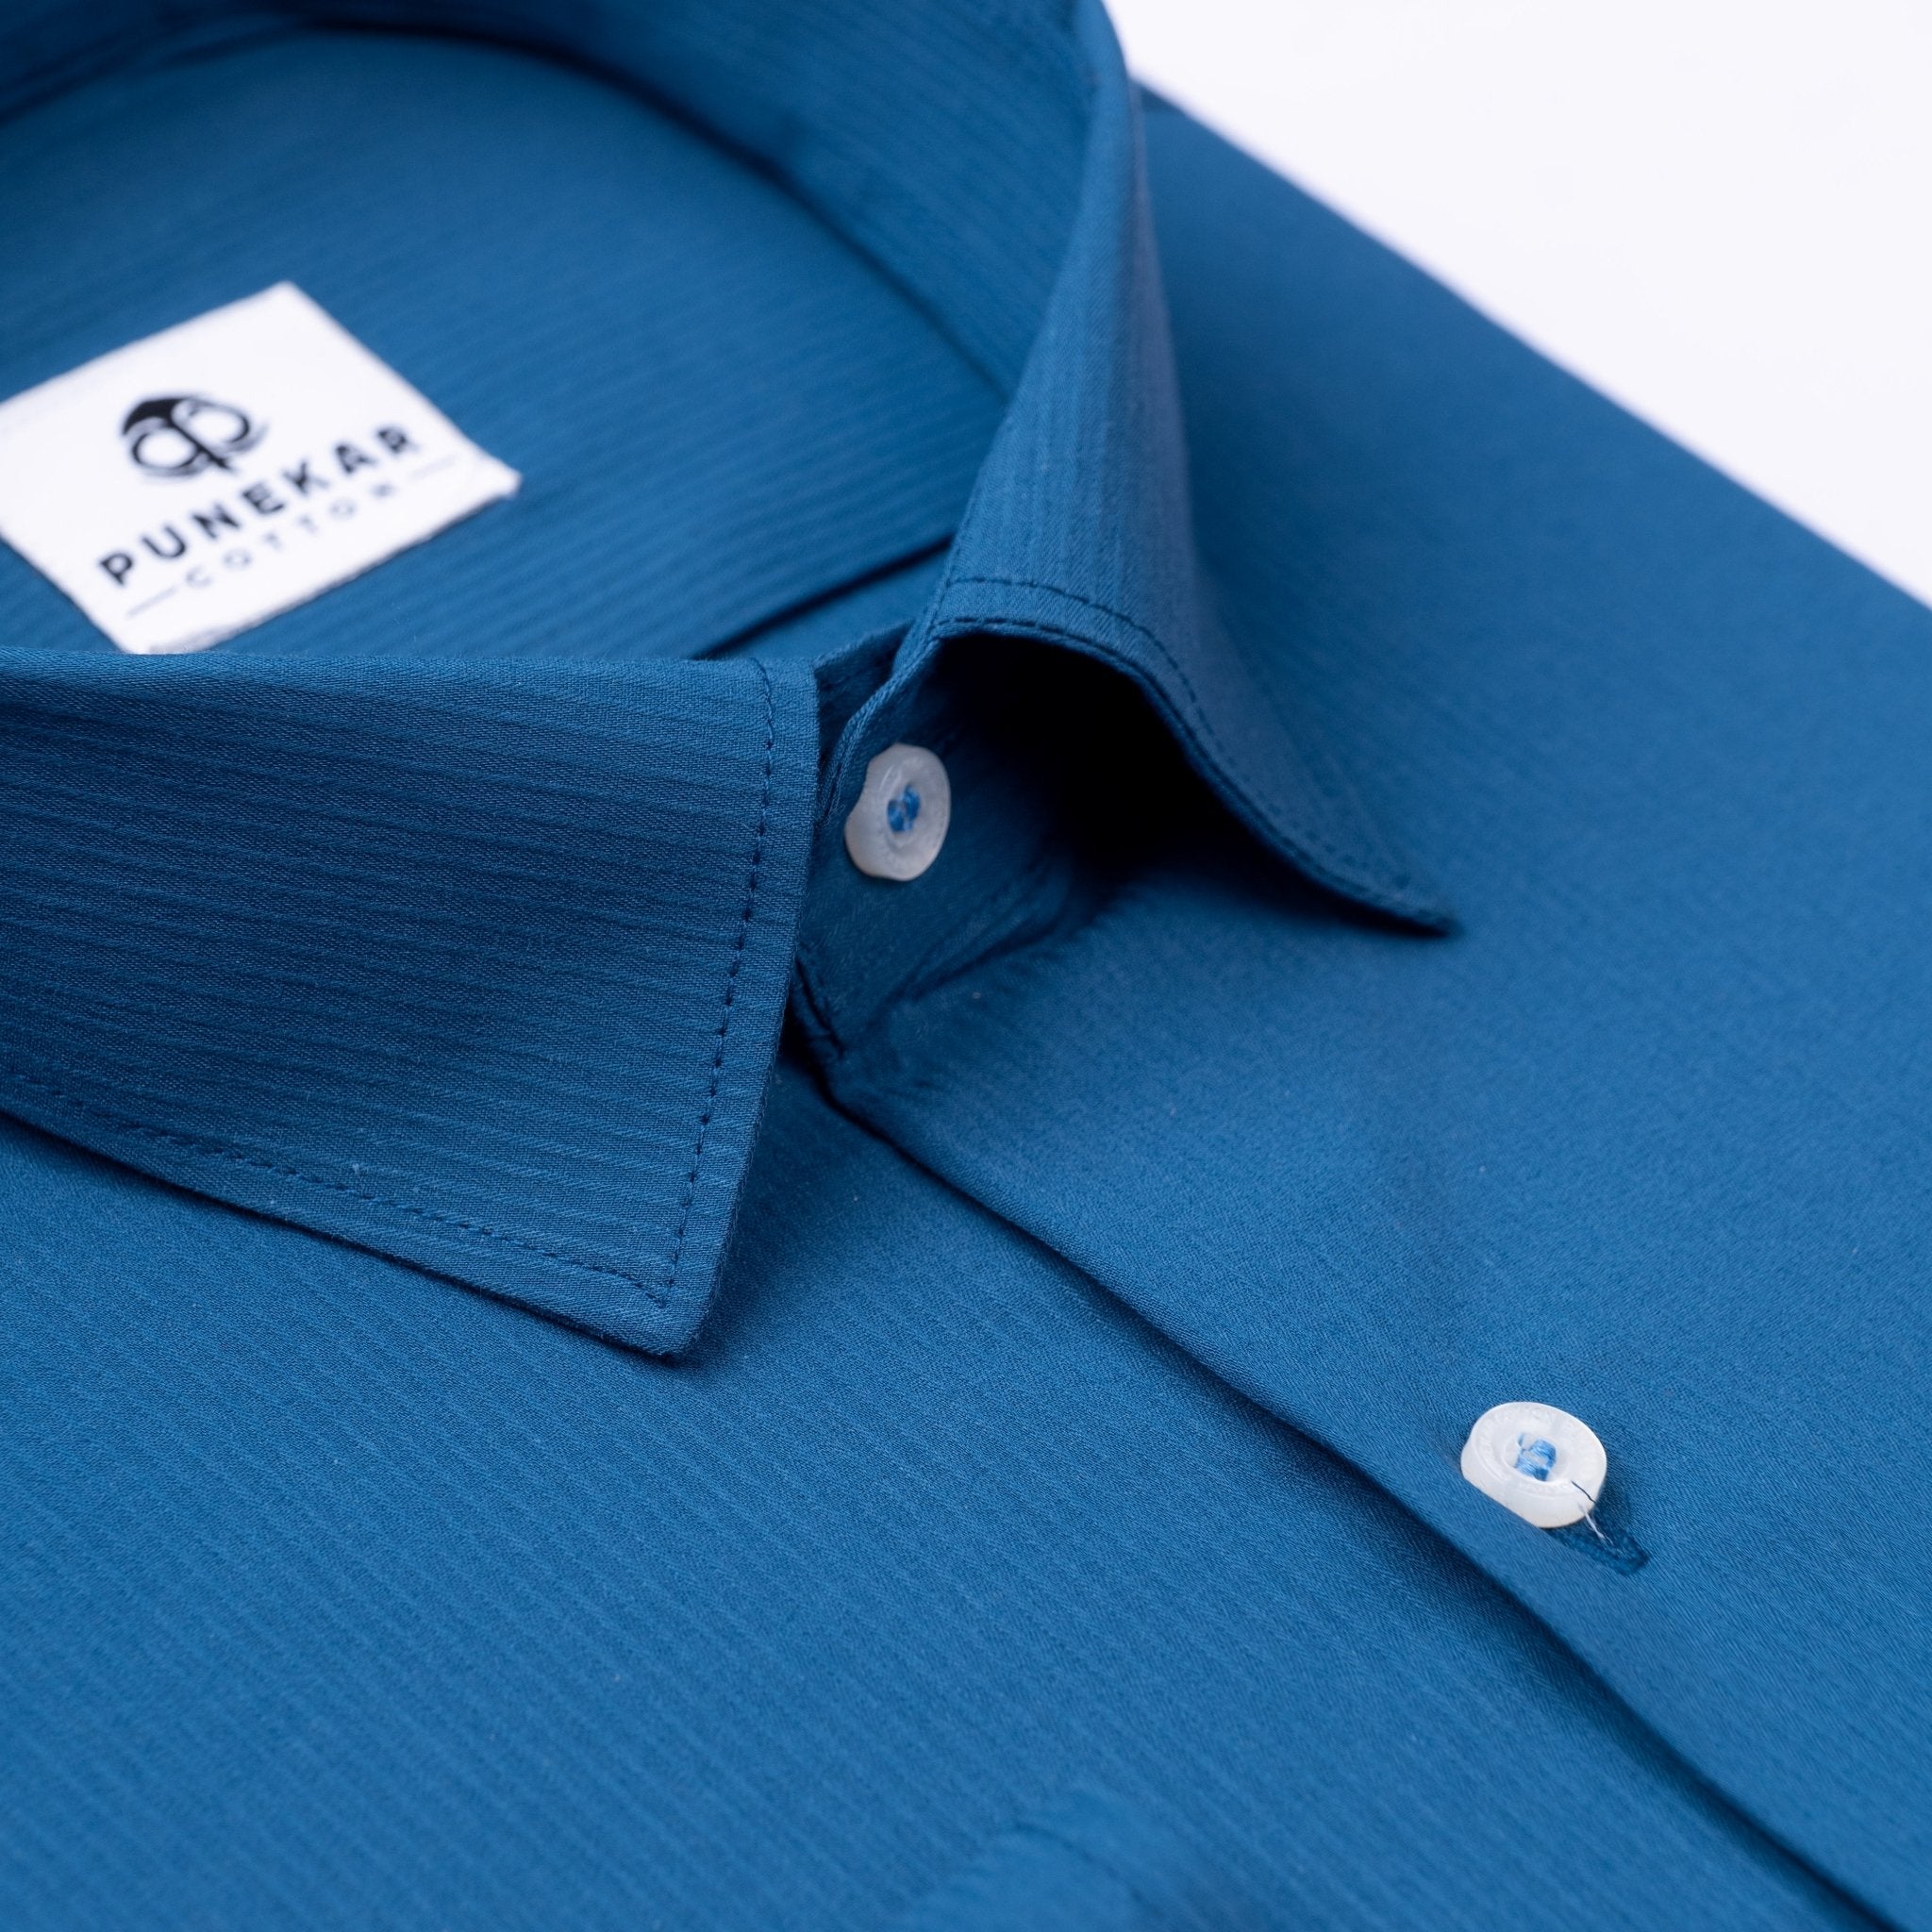 Royal Blue Color Lining Texture Lycra Cotton Shirt For Men - Punekar Cotton